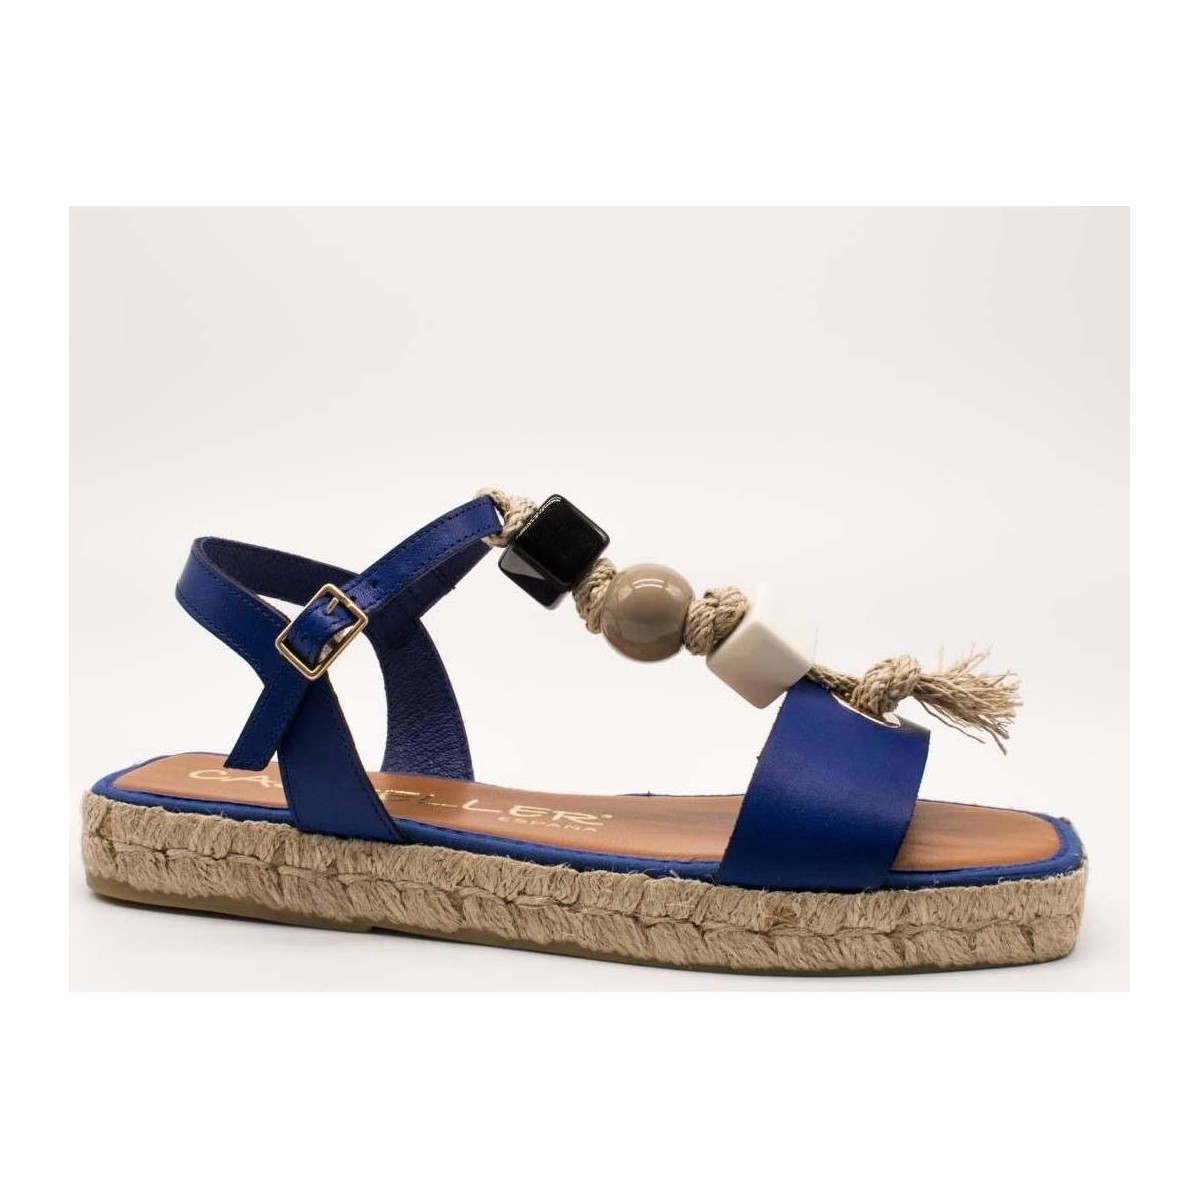 Zapatos Mujer Alpargatas Casteller 18-21-868 Azul Azul